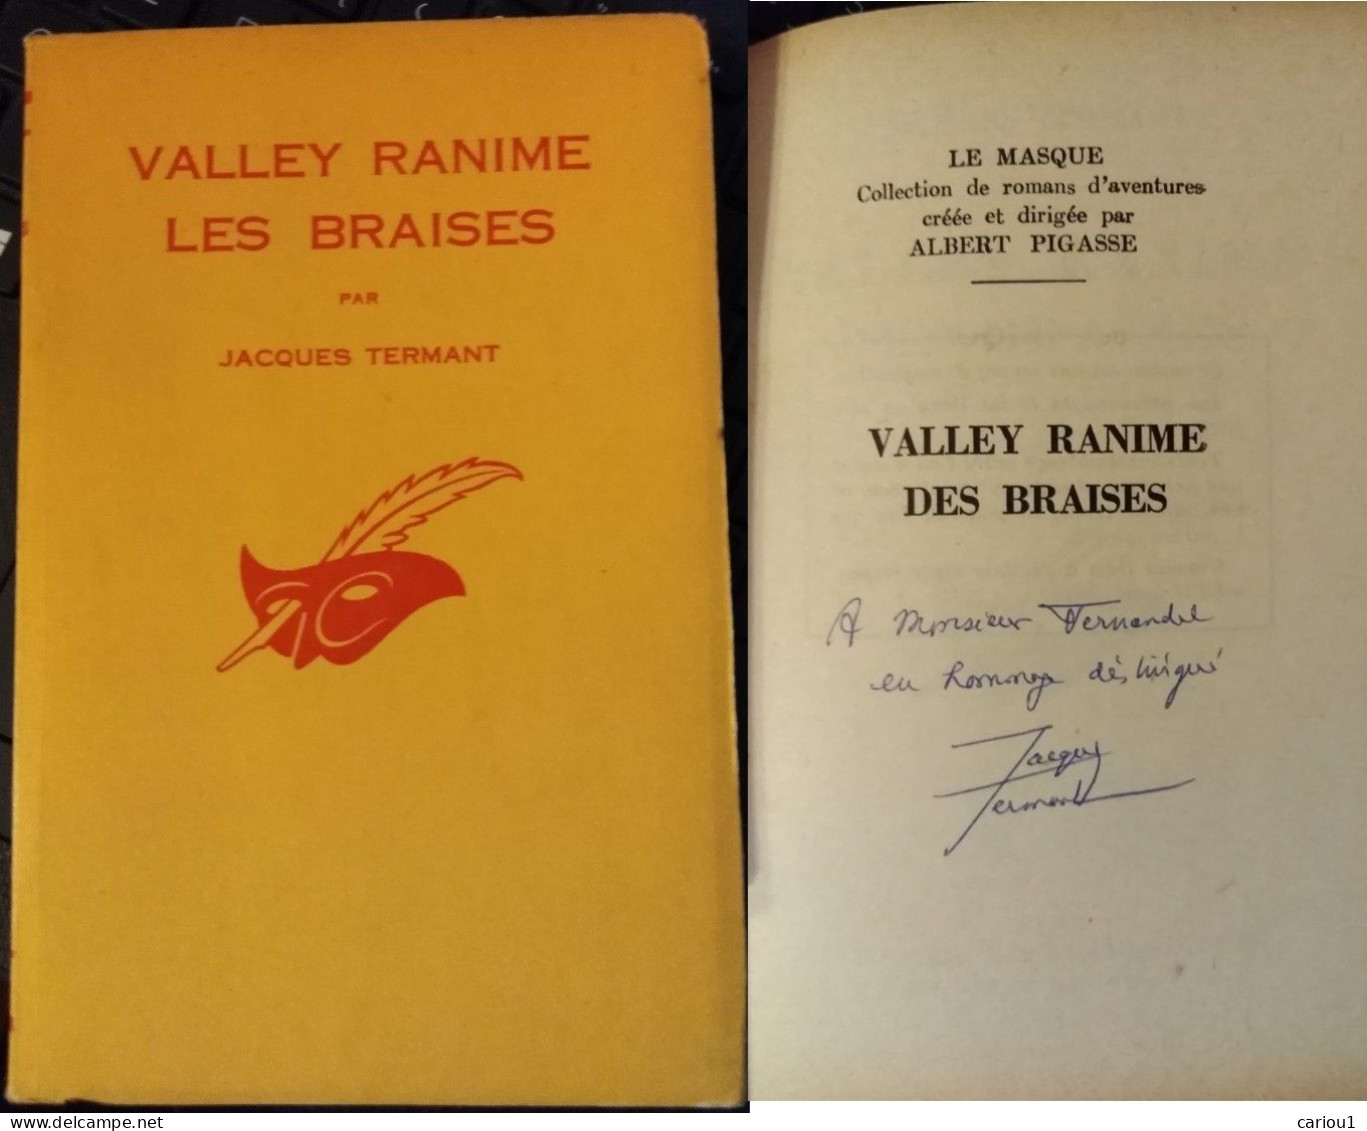 C1 Francois BALSAN Termant VALLEY RANIME LES BRAISES 1962 Envoi DEDICACE SIGNED Port Inclus France - Signierte Bücher